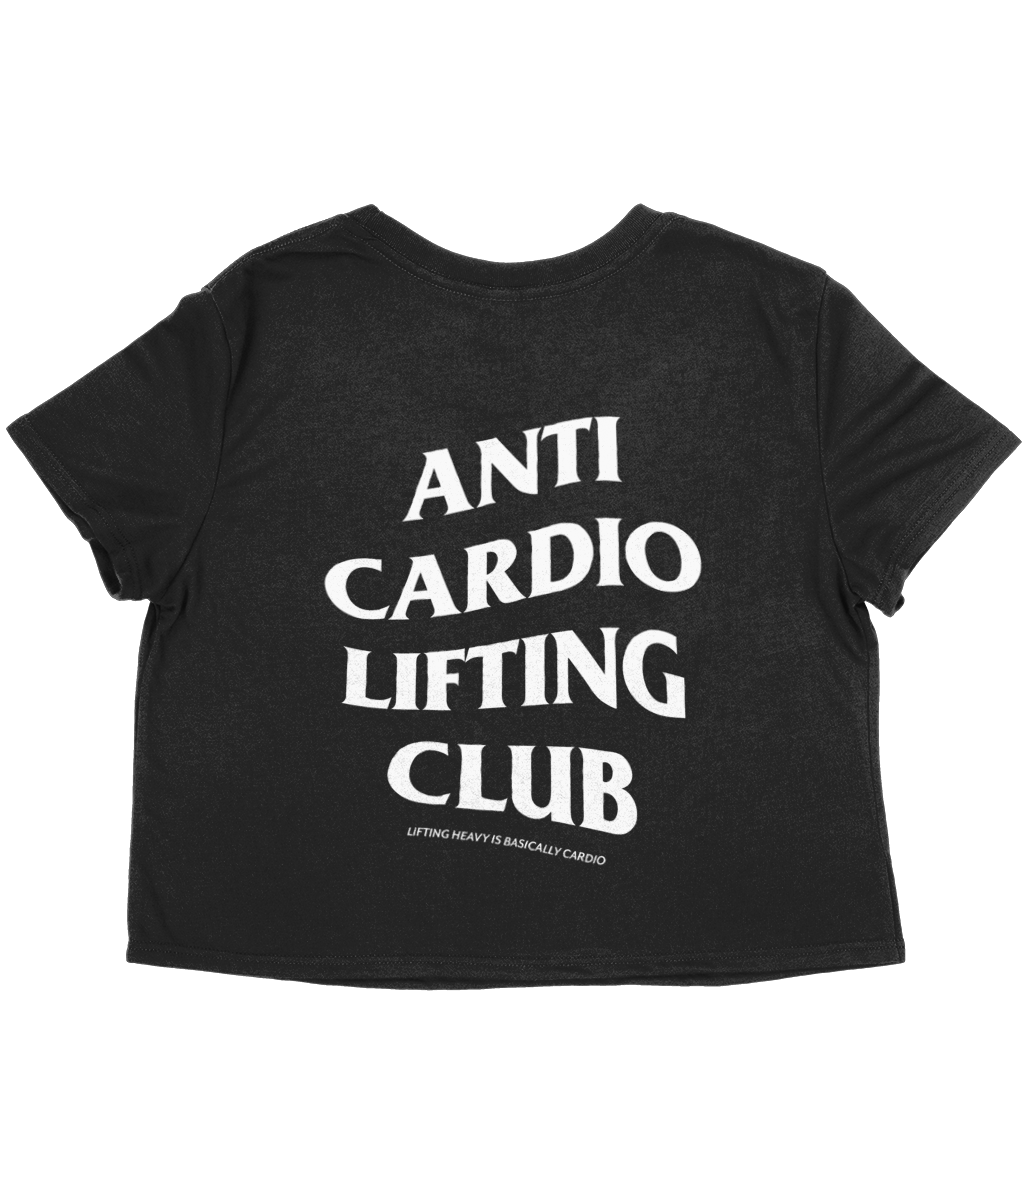 Anti Cardio Lifting Club crop top